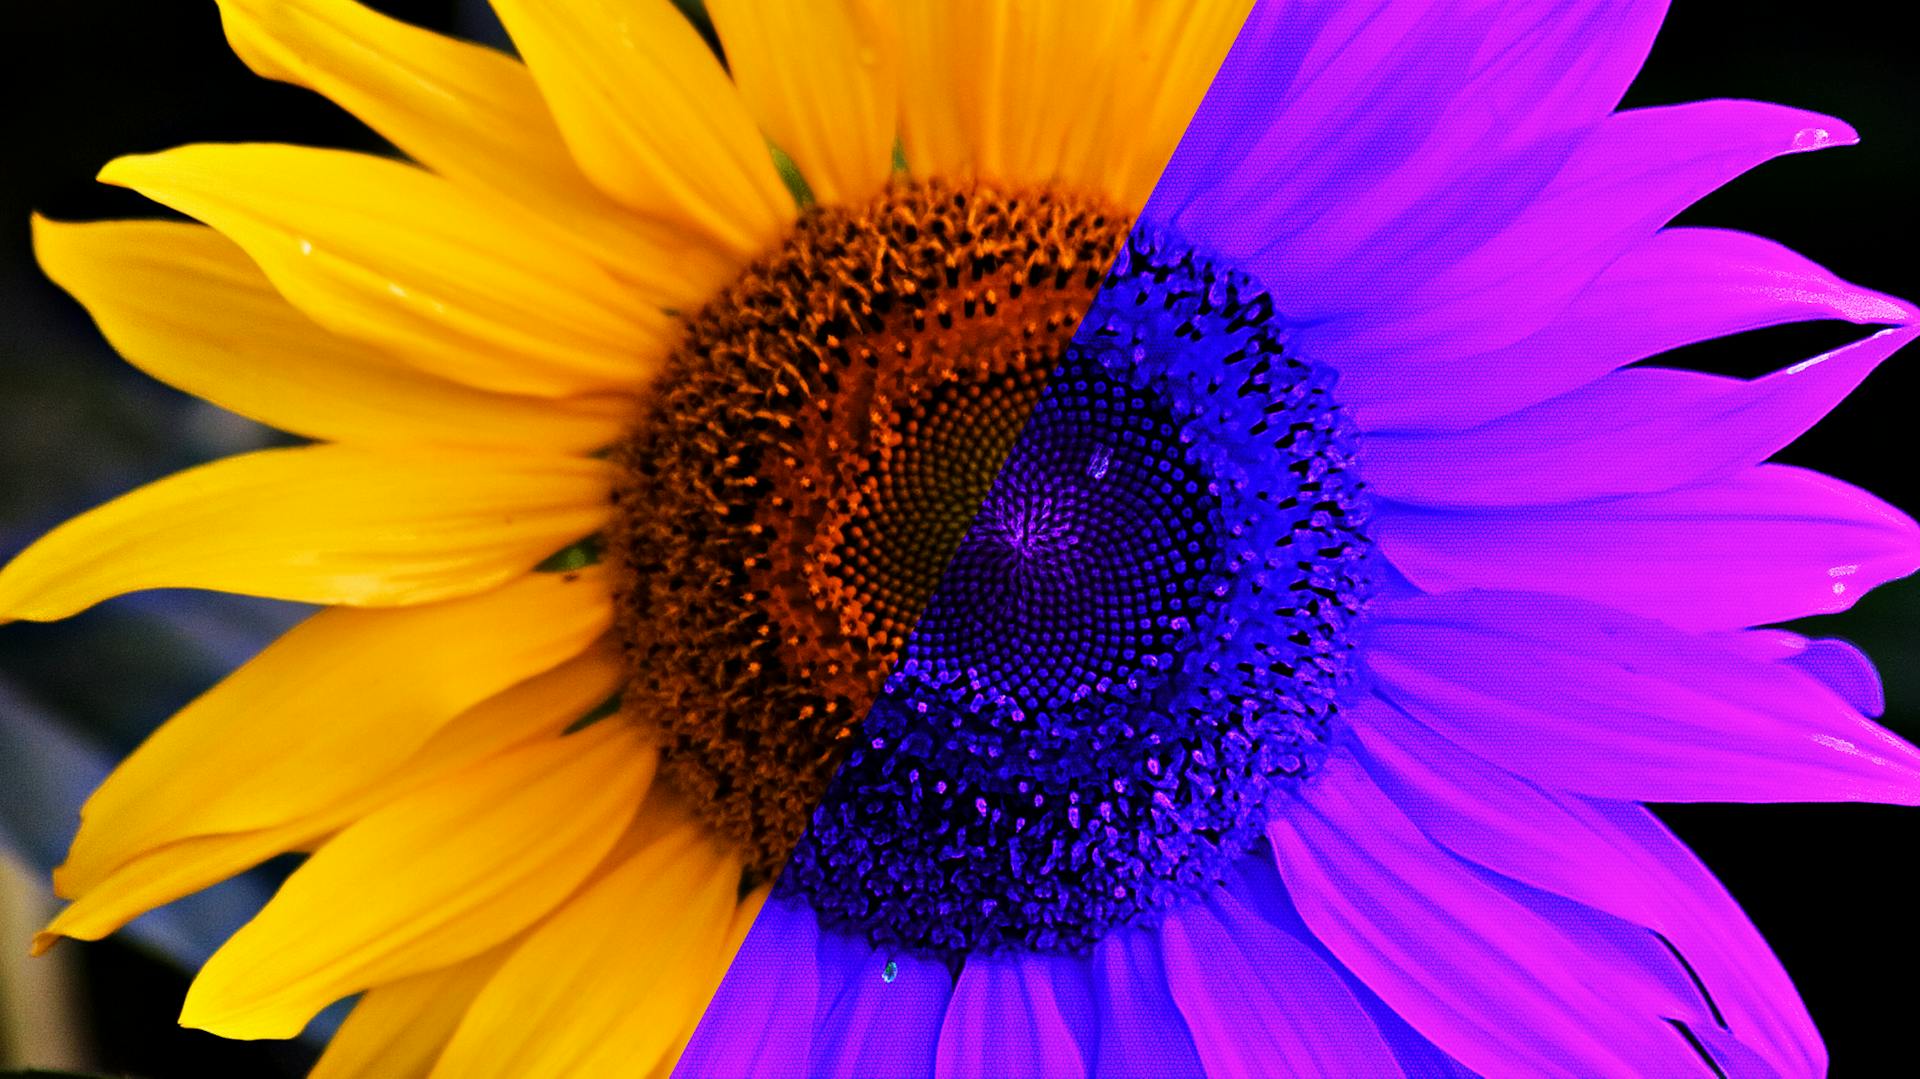 Sonnenblume in zwei verschiedenen Farbspektren